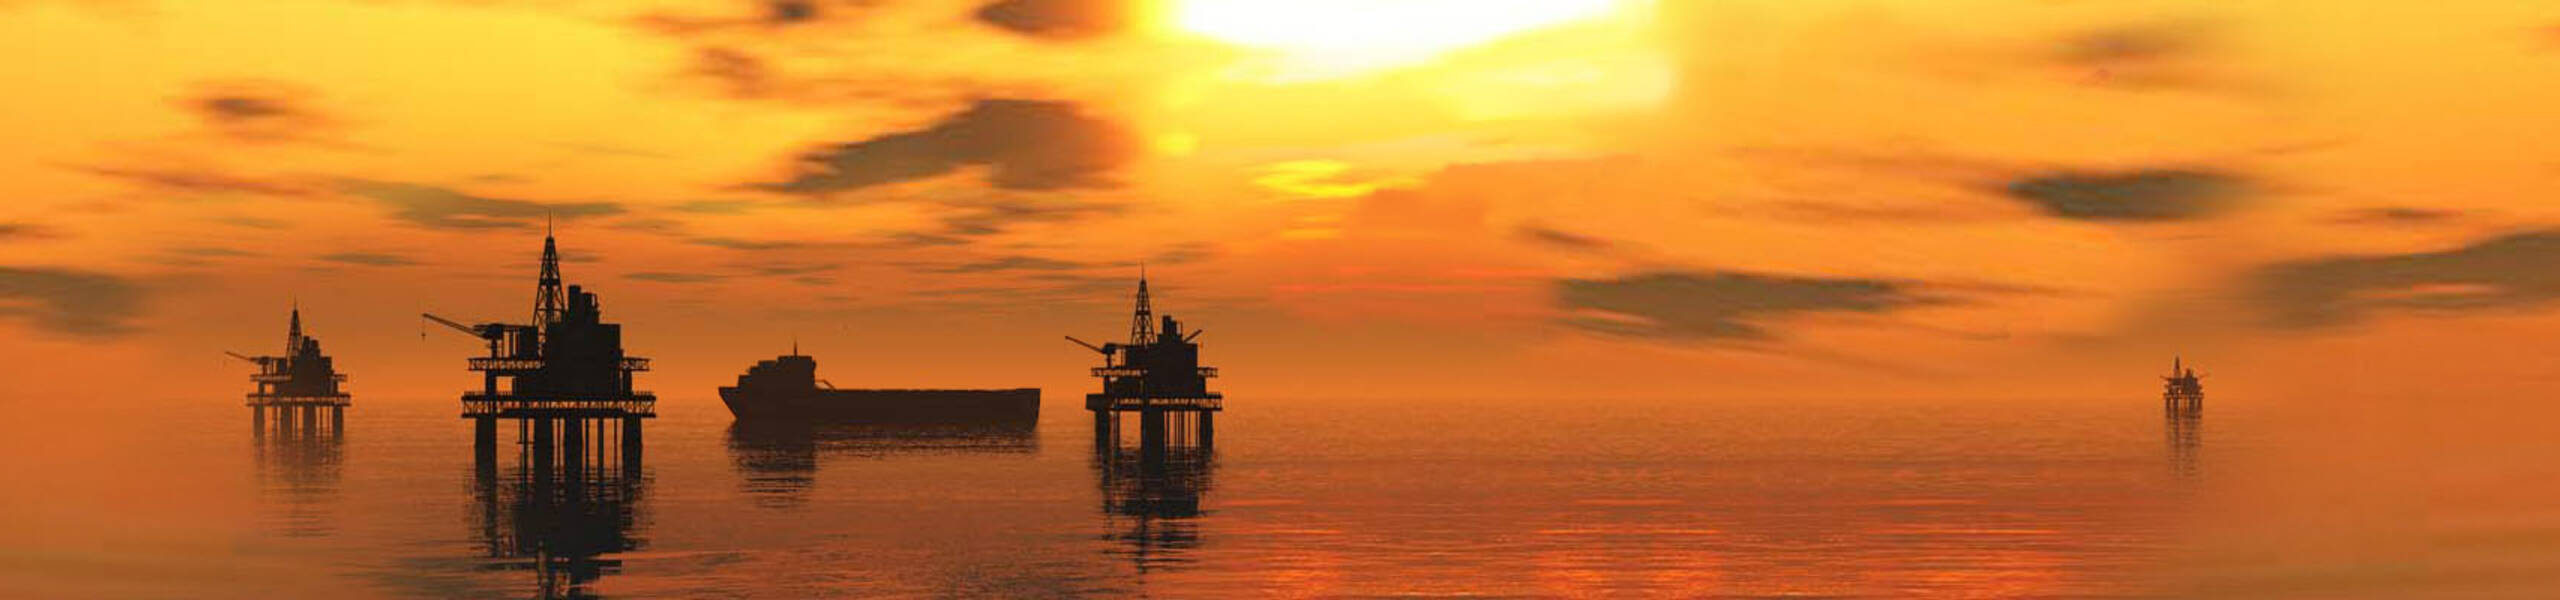 EIA:  estoques de petróleo caem em 5,2 milhões de barris